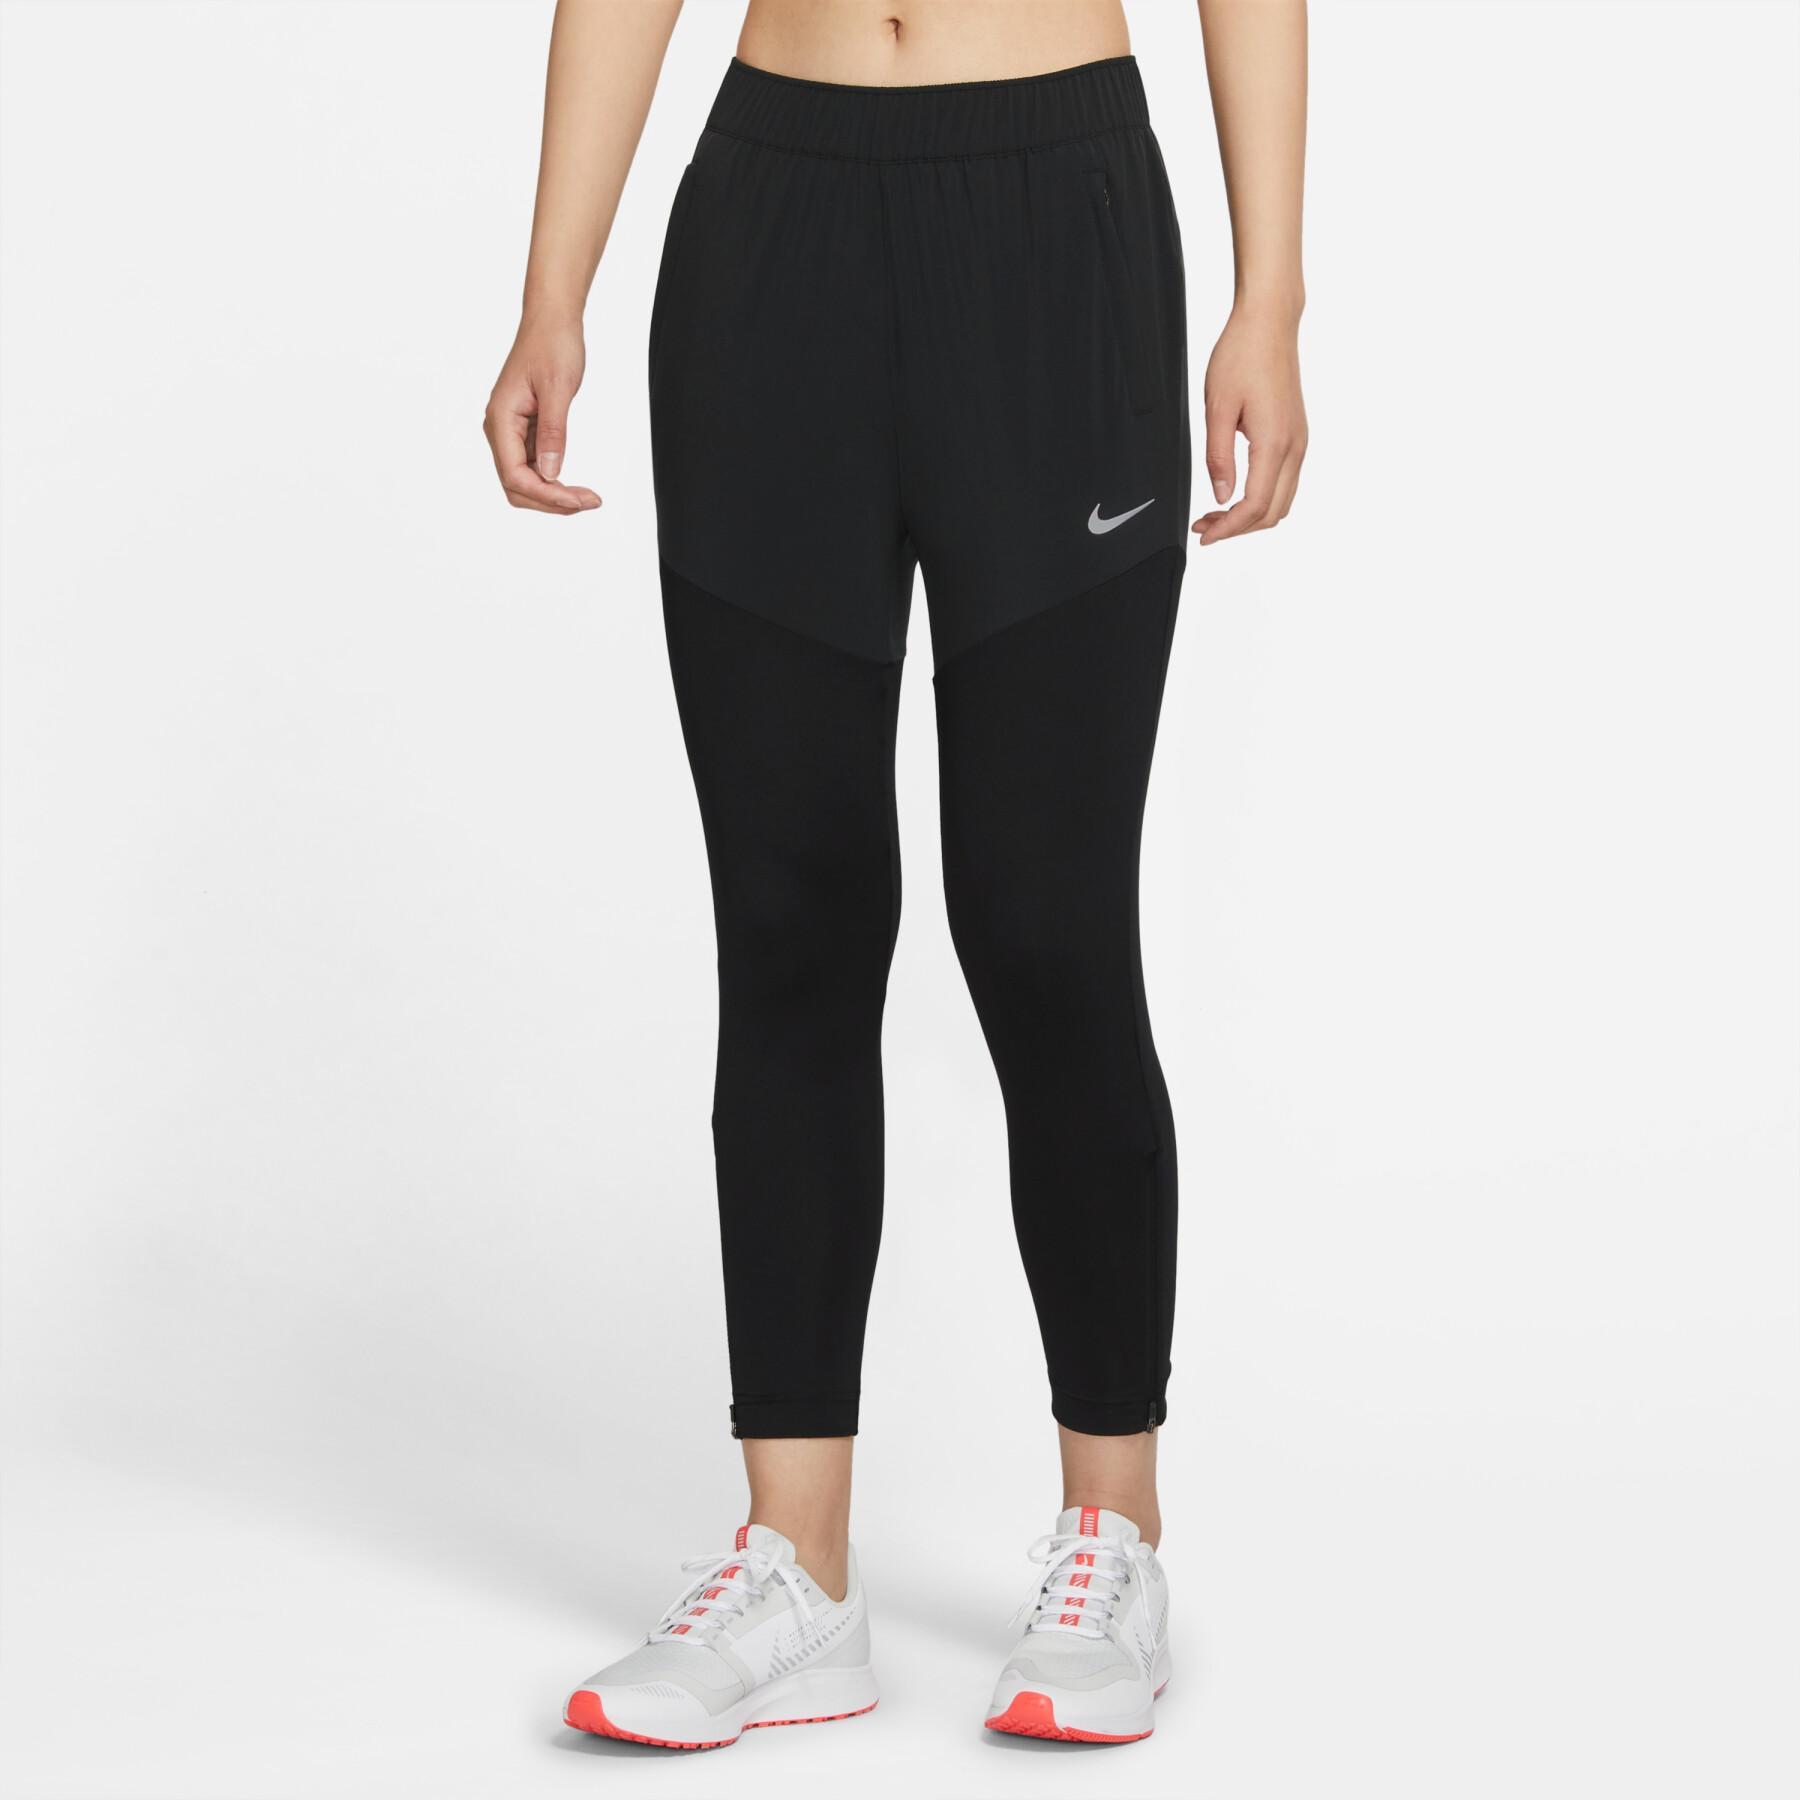 Jogging Nike Dri-Fit Femme - Noir et Gris - Respirant - Multisport